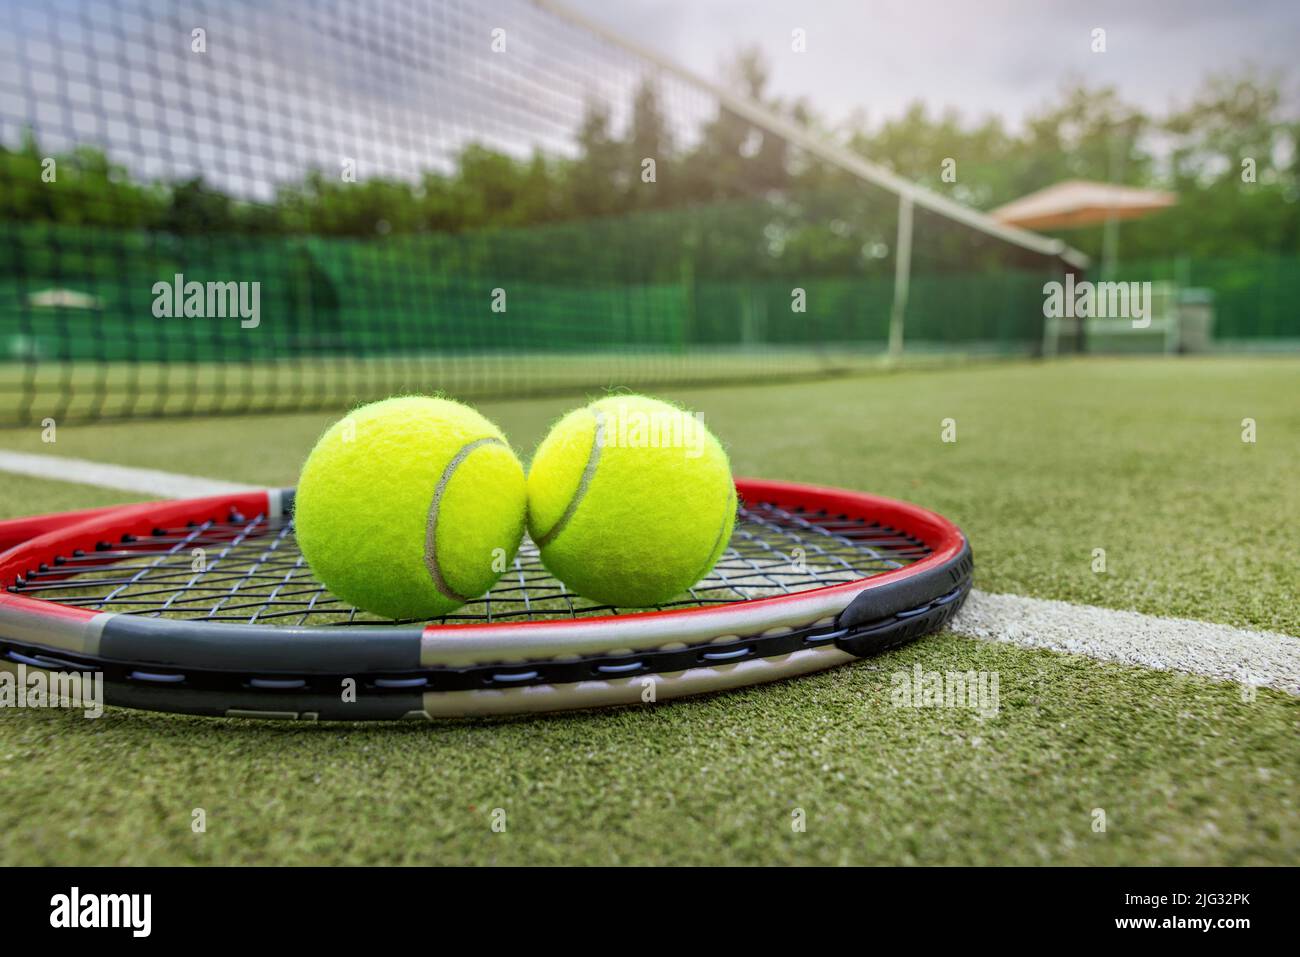 raquette et balles de tennis sur terrain extérieur en gazon synthétique Banque D'Images